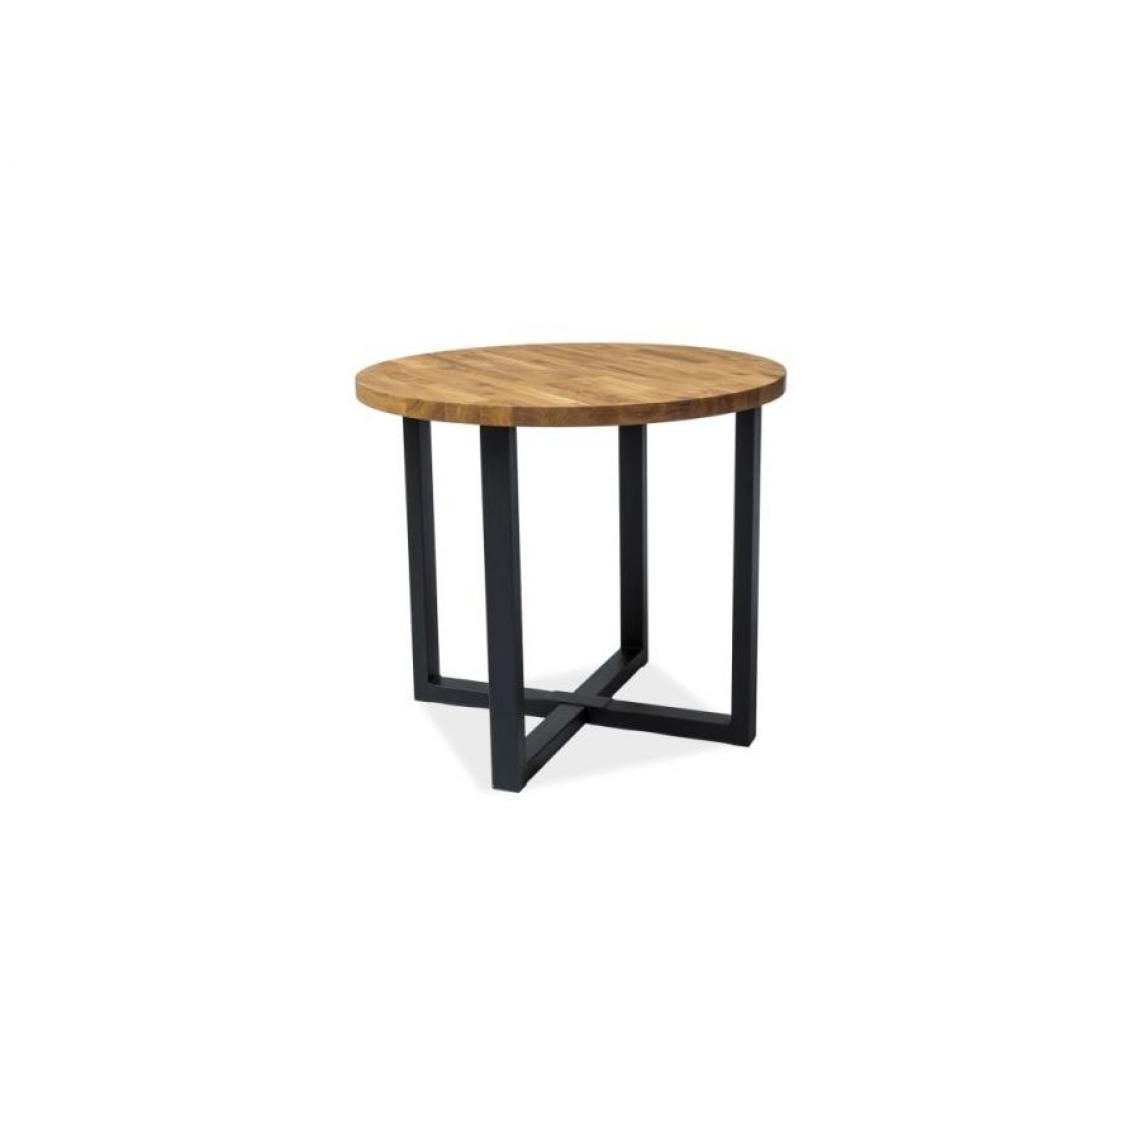 Hucoco - ROLT - Table ronde de style industriel - 90X90x78 cm - Plateau en bois - Piètement en métal - Table fixe - Chêne - Tables à manger